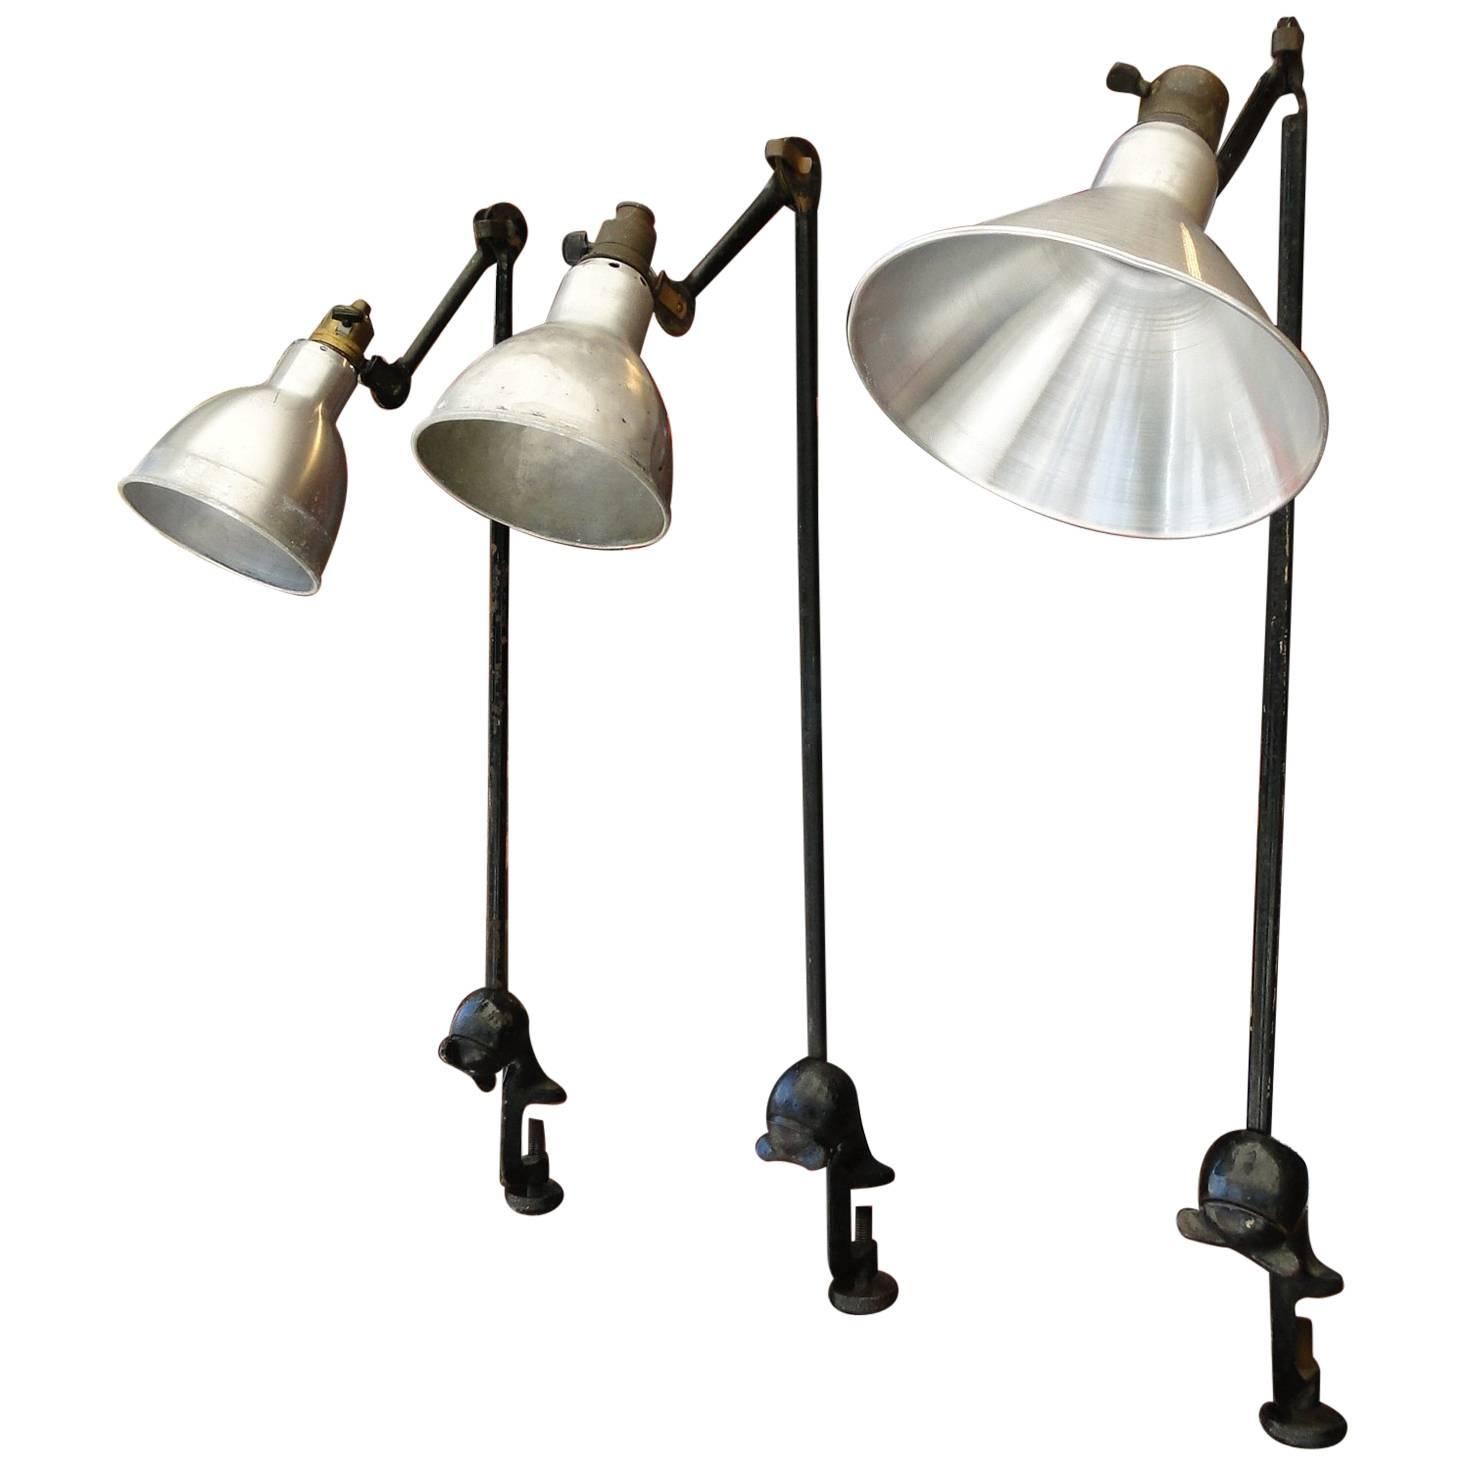 Lampe Gras No. 201     3 Table Lamps, circa 1930